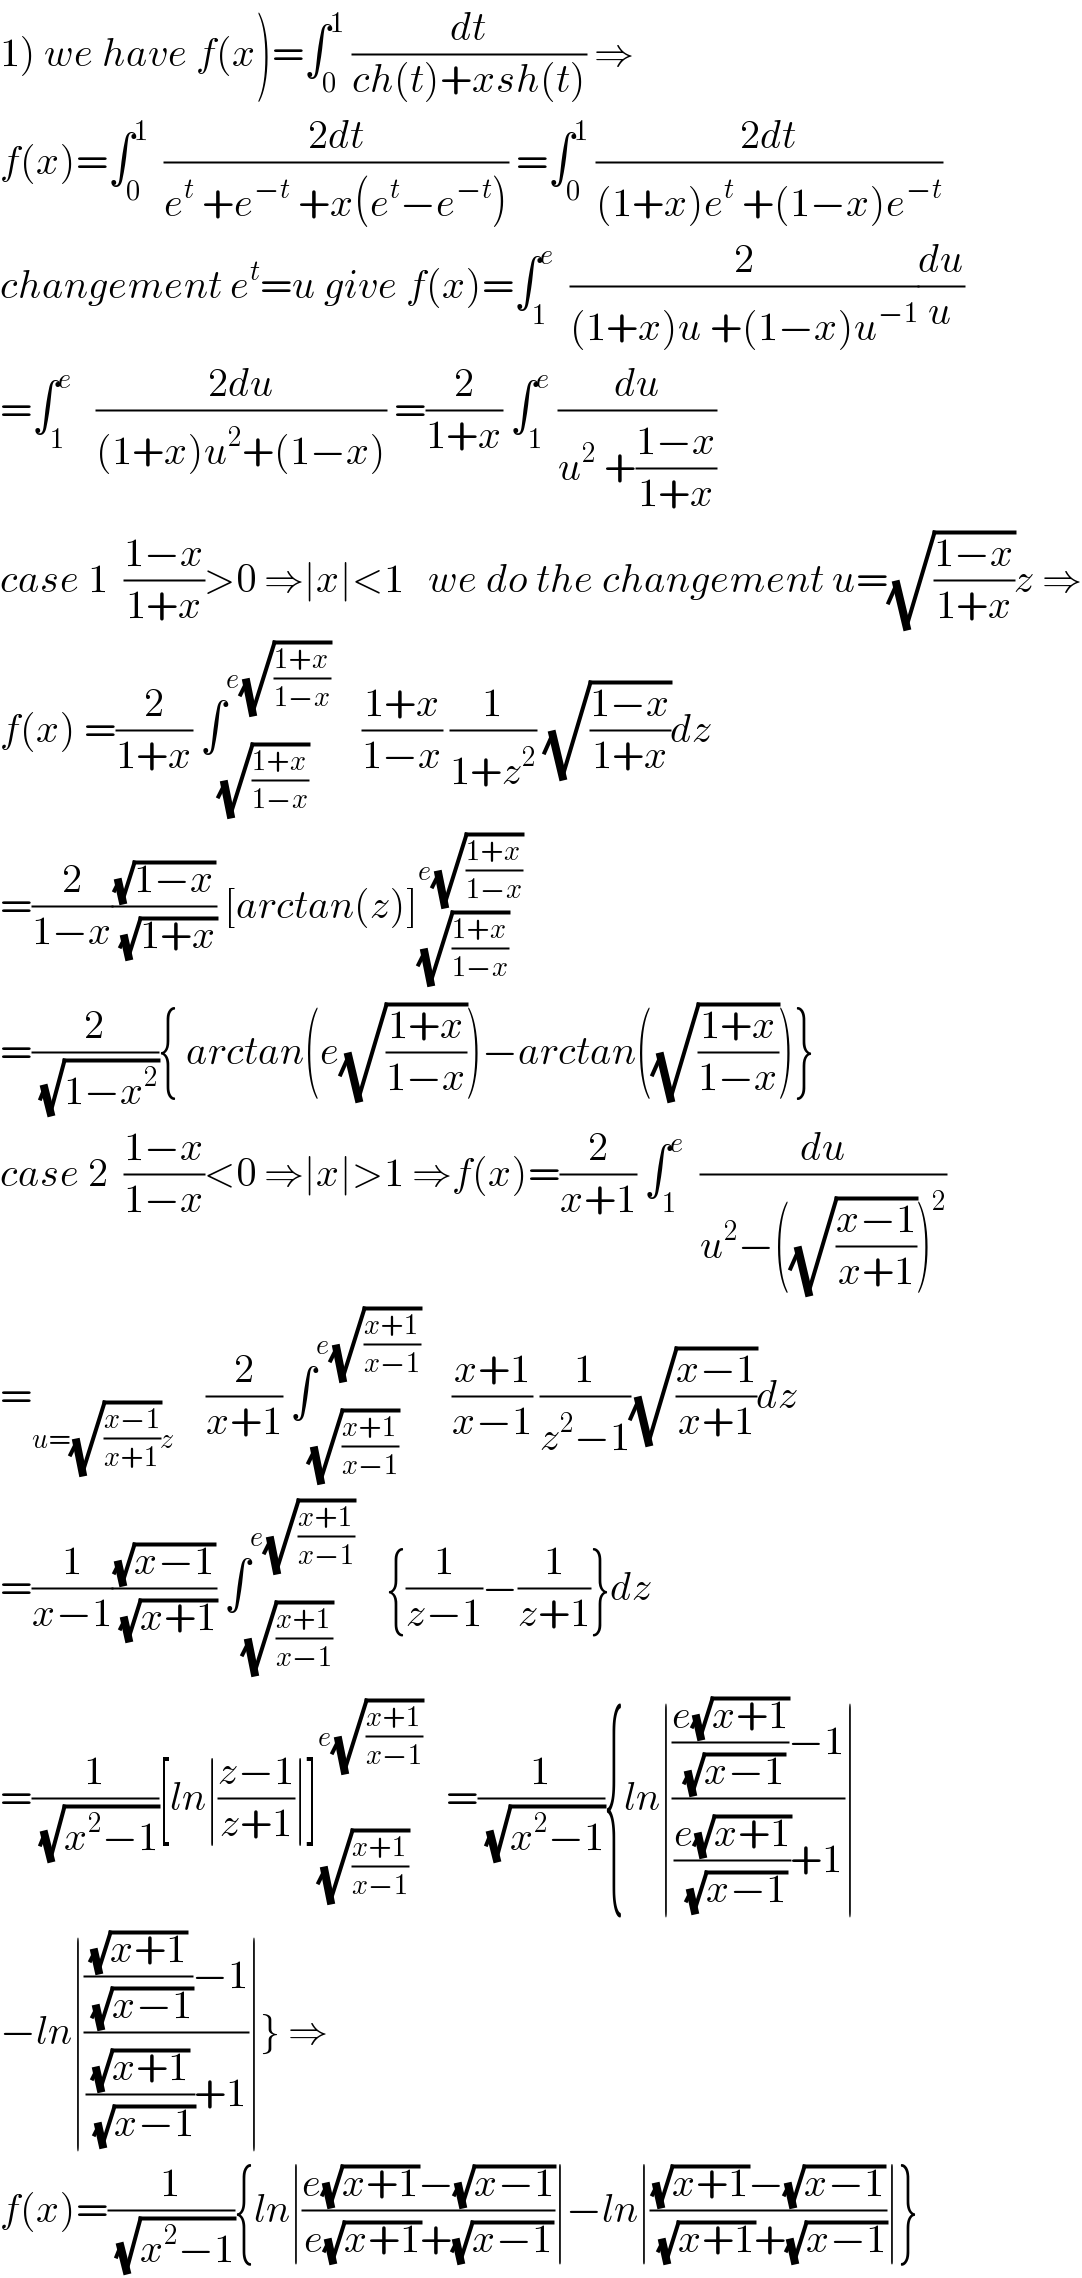 1) we have f(x)=∫_0 ^1  (dt/(ch(t)+xsh(t))) ⇒  f(x)=∫_0 ^1   ((2dt)/(e^t  +e^(−t)  +x(e^t −e^(−t) ))) =∫_0 ^1  ((2dt)/((1+x)e^t  +(1−x)e^(−t) ))  changement e^t =u give f(x)=∫_1 ^e   (2/((1+x)u +(1−x)u^(−1) ))(du/u)  =∫_1 ^e    ((2du)/((1+x)u^2 +(1−x))) =(2/(1+x)) ∫_1 ^e  (du/(u^2  +((1−x)/(1+x))))  case 1  ((1−x)/(1+x))>0 ⇒∣x∣<1   we do the changement u=(√((1−x)/(1+x)))z ⇒  f(x) =(2/(1+x)) ∫_(√((1+x)/(1−x))) ^(e(√((1+x)/(1−x))))     ((1+x)/(1−x)) (1/(1+z^2 )) (√((1−x)/(1+x)))dz  =(2/(1−x))((√(1−x))/( (√(1+x)))) [arctan(z)]_(√((1+x)/(1−x))) ^(e(√((1+x)/(1−x))))   =(2/( (√(1−x^2 )))){ arctan(e(√((1+x)/(1−x))))−arctan((√((1+x)/(1−x))))}  case 2  ((1−x)/(1−x))<0 ⇒∣x∣>1 ⇒f(x)=(2/(x+1)) ∫_1 ^e   (du/(u^2 −((√((x−1)/(x+1))))^2 ))  =_(u=(√((x−1)/(x+1)))z)     (2/(x+1)) ∫_(√((x+1)/(x−1))) ^(e(√((x+1)/(x−1))))     ((x+1)/(x−1)) (1/(z^2 −1))(√((x−1)/(x+1)))dz  =(1/(x−1))((√(x−1))/( (√(x+1)))) ∫_(√((x+1)/(x−1))) ^(e(√((x+1)/(x−1))))     {(1/(z−1))−(1/(z+1))}dz  =(1/( (√(x^2 −1))))[ln∣((z−1)/(z+1))∣]_(√((x+1)/(x−1))) ^(e(√((x+1)/(x−1))))    =(1/( (√(x^2 −1)))){ln∣((((e(√(x+1)))/( (√(x−1))))−1)/(((e(√(x+1)))/( (√(x−1))))+1))∣  −ln∣((((√(x+1))/( (√(x−1))))−1)/(((√(x+1))/( (√(x−1))))+1))∣} ⇒  f(x)=(1/( (√(x^2 −1)))){ln∣((e(√(x+1))−(√(x−1)))/(e(√(x+1))+(√(x−1))))∣−ln∣(((√(x+1))−(√(x−1)))/( (√(x+1))+(√(x−1))))∣}  